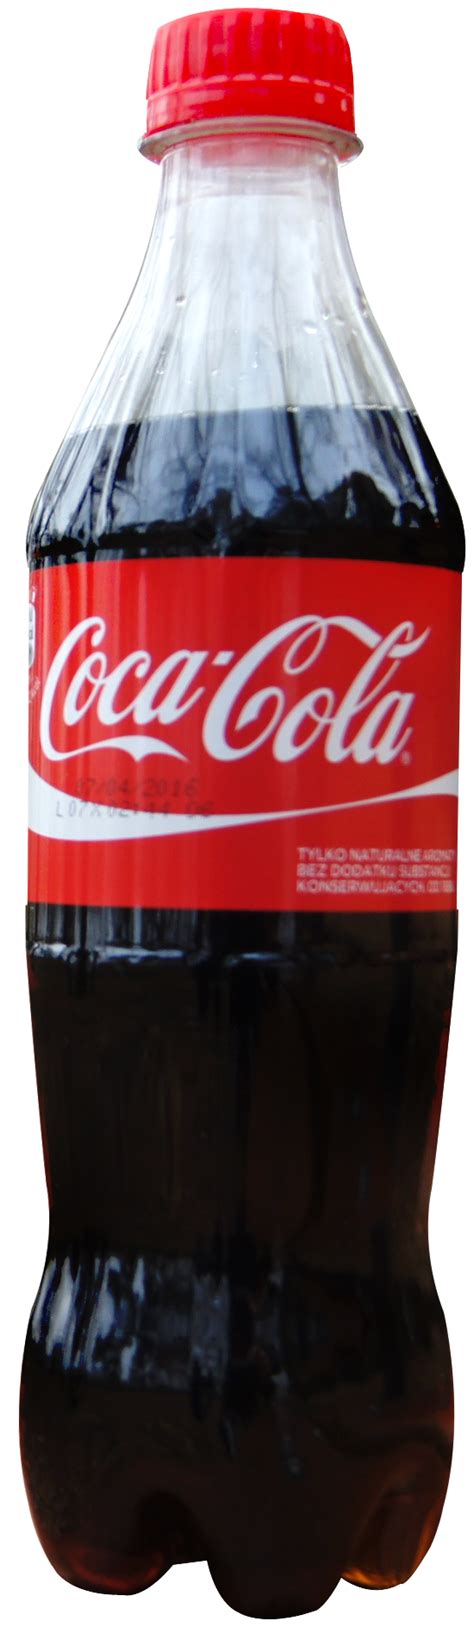 coca cola png image pngpix